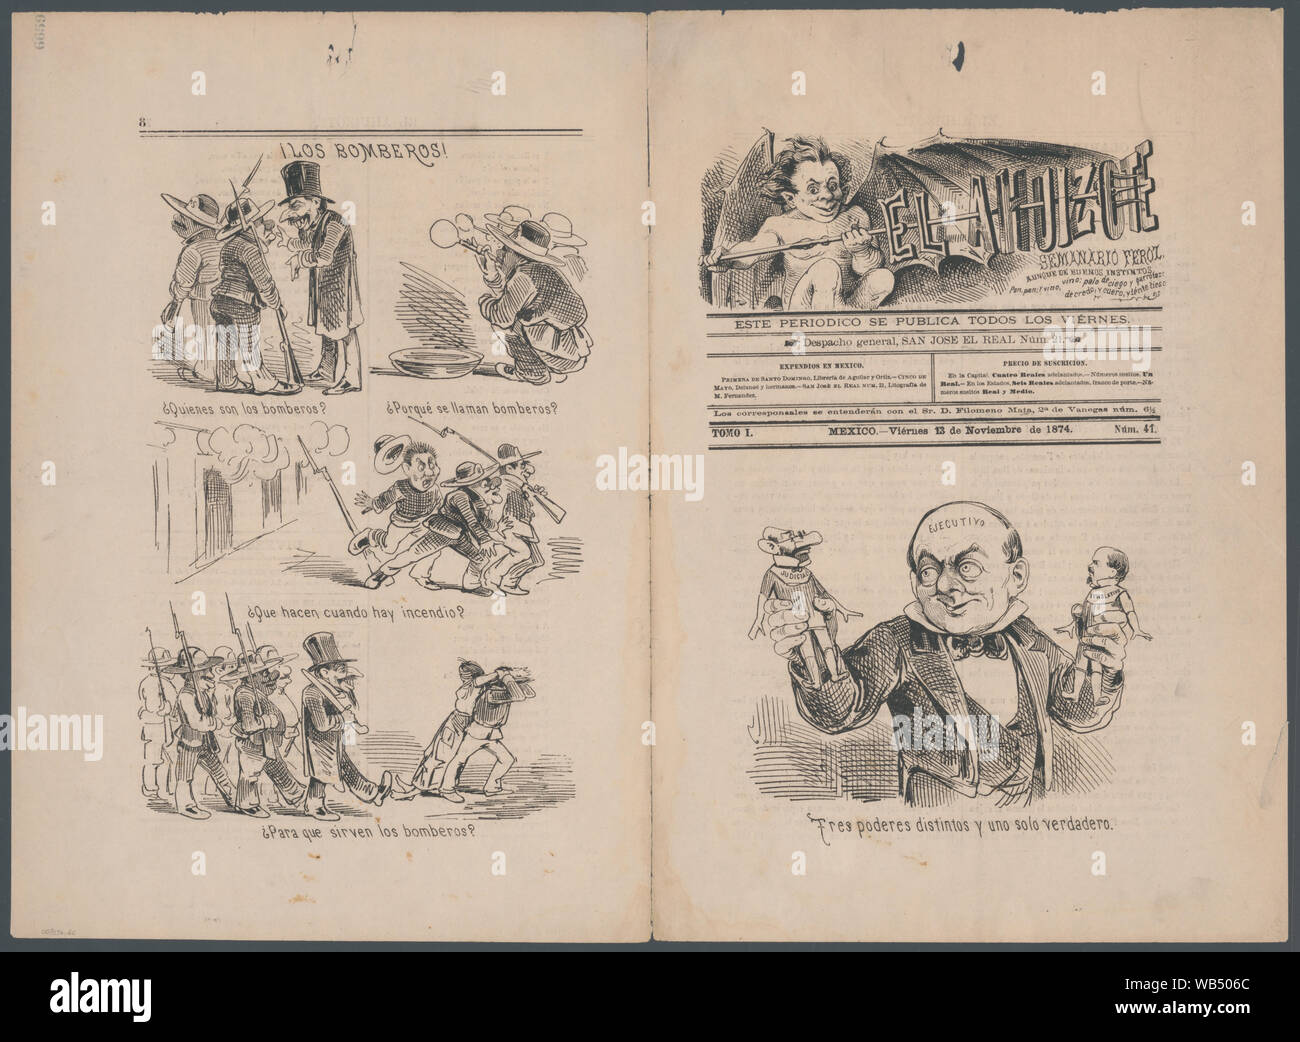 El Ahuizote, semanario feroz, aunque de buenos instintos, Viernes 13 de Noviembre de 1874 Abstract/medium: 1 item Stock Photo